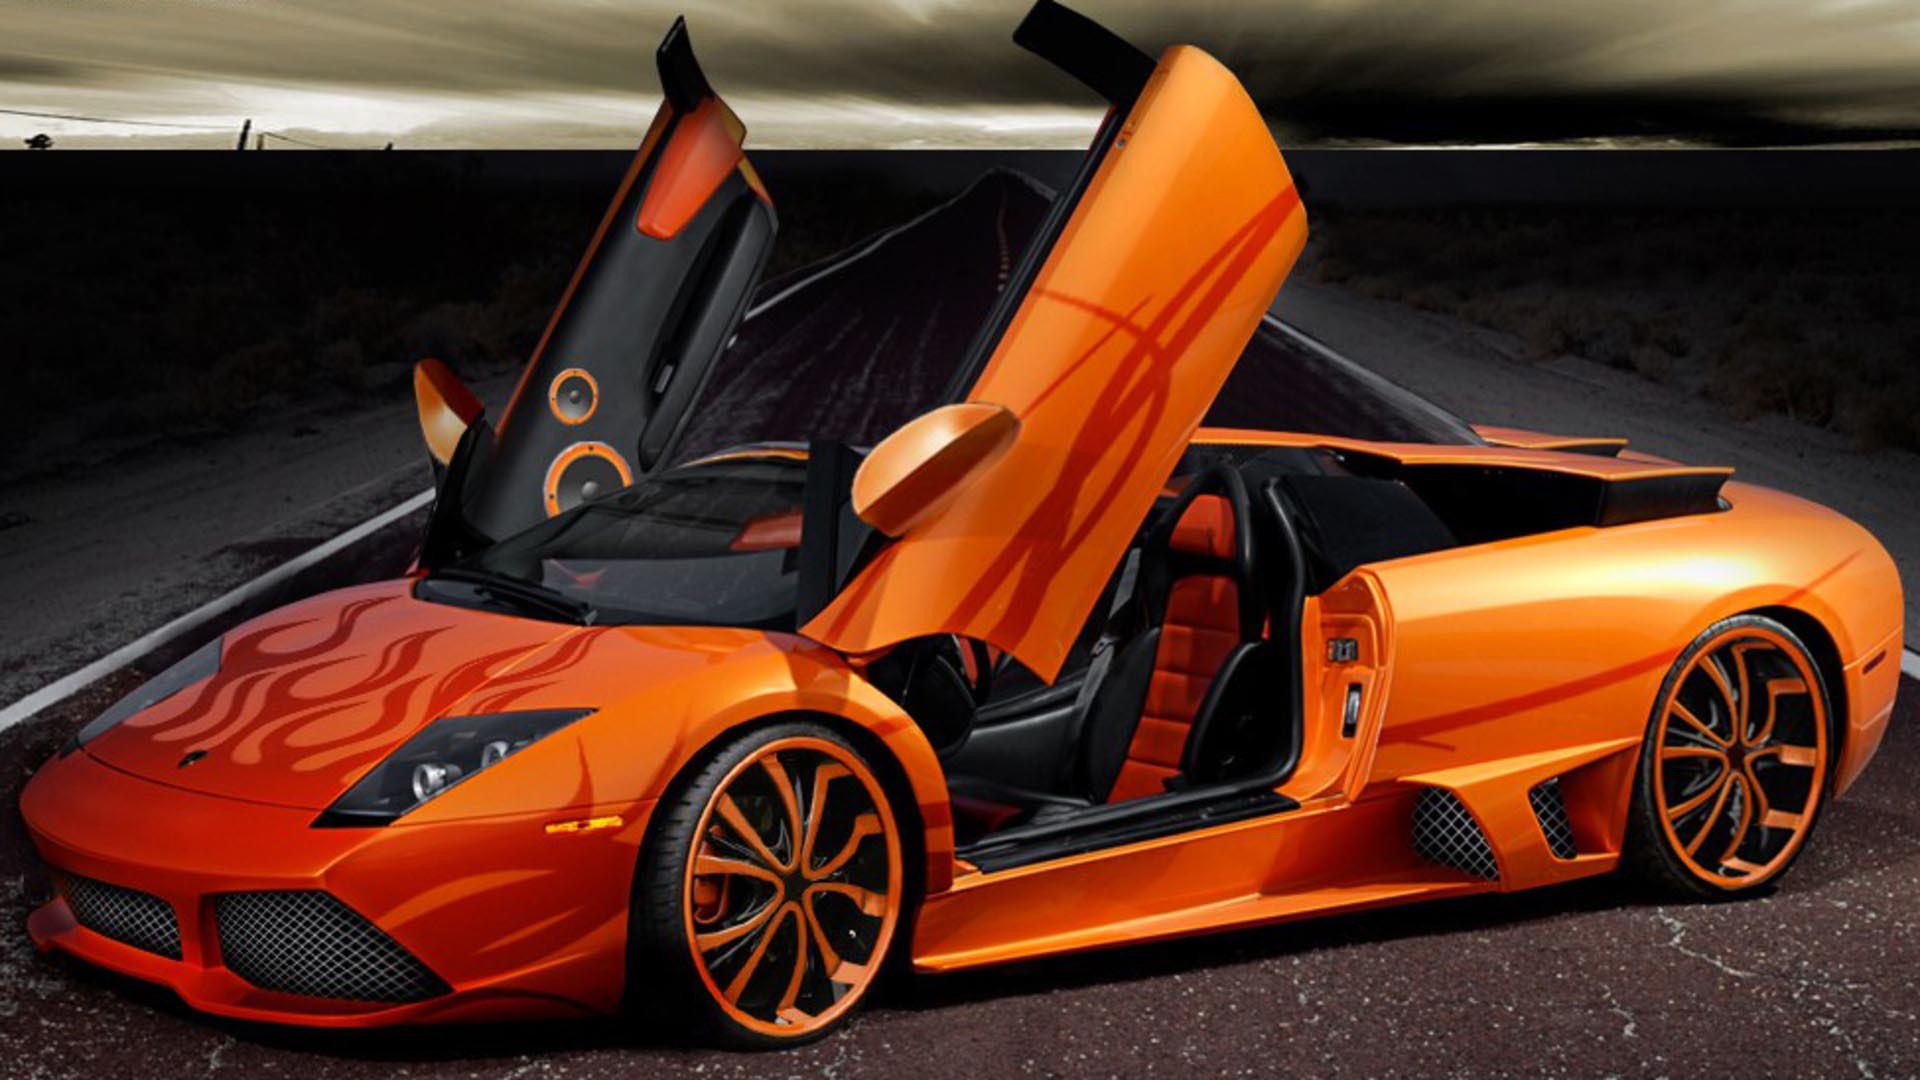 Lamborghini là một trong những thương hiệu xe hơi sang trọng và đắt tiền nhất trên thế giới. Nếu bạn muốn khám phá vẻ đẹp tinh tế và sự hoàn hảo trong thiết kế của Lamborghini, hãy xem hình ảnh này để thỏa mãn đam mê của mình. Chắc chắn bạn sẽ không thất vọng!